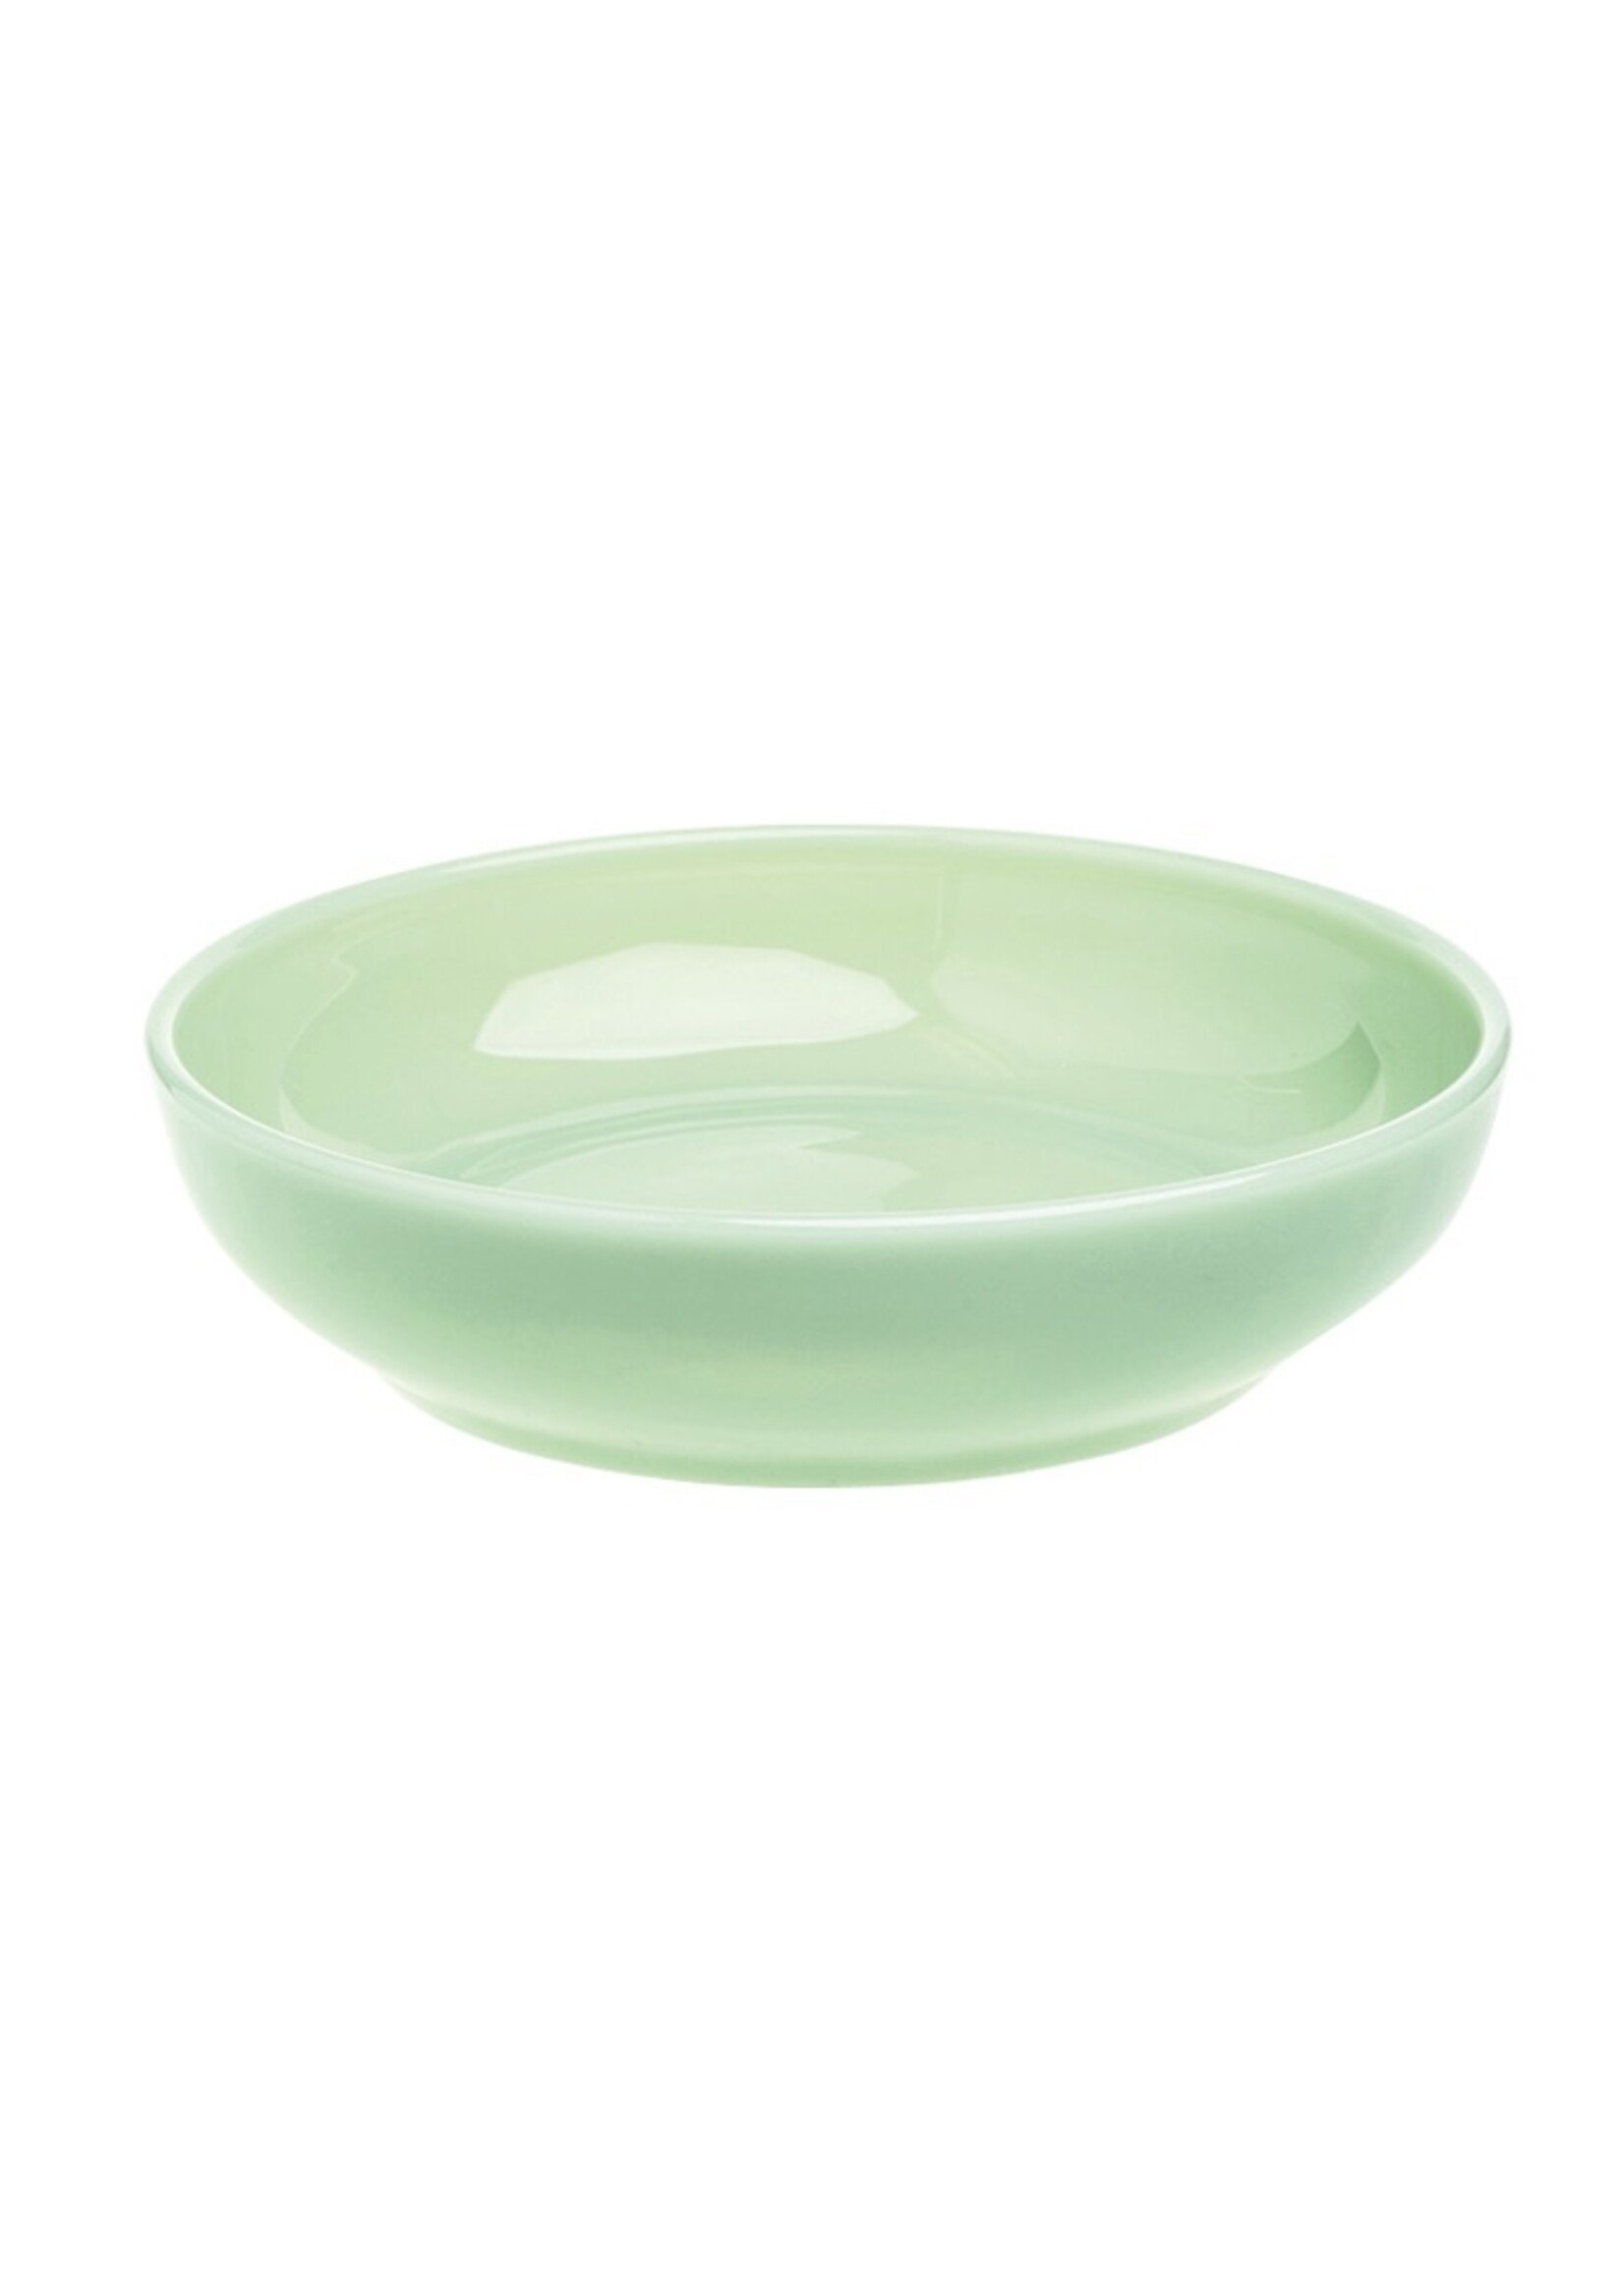 Mosser Glass 9" bowls by Mosser Glass